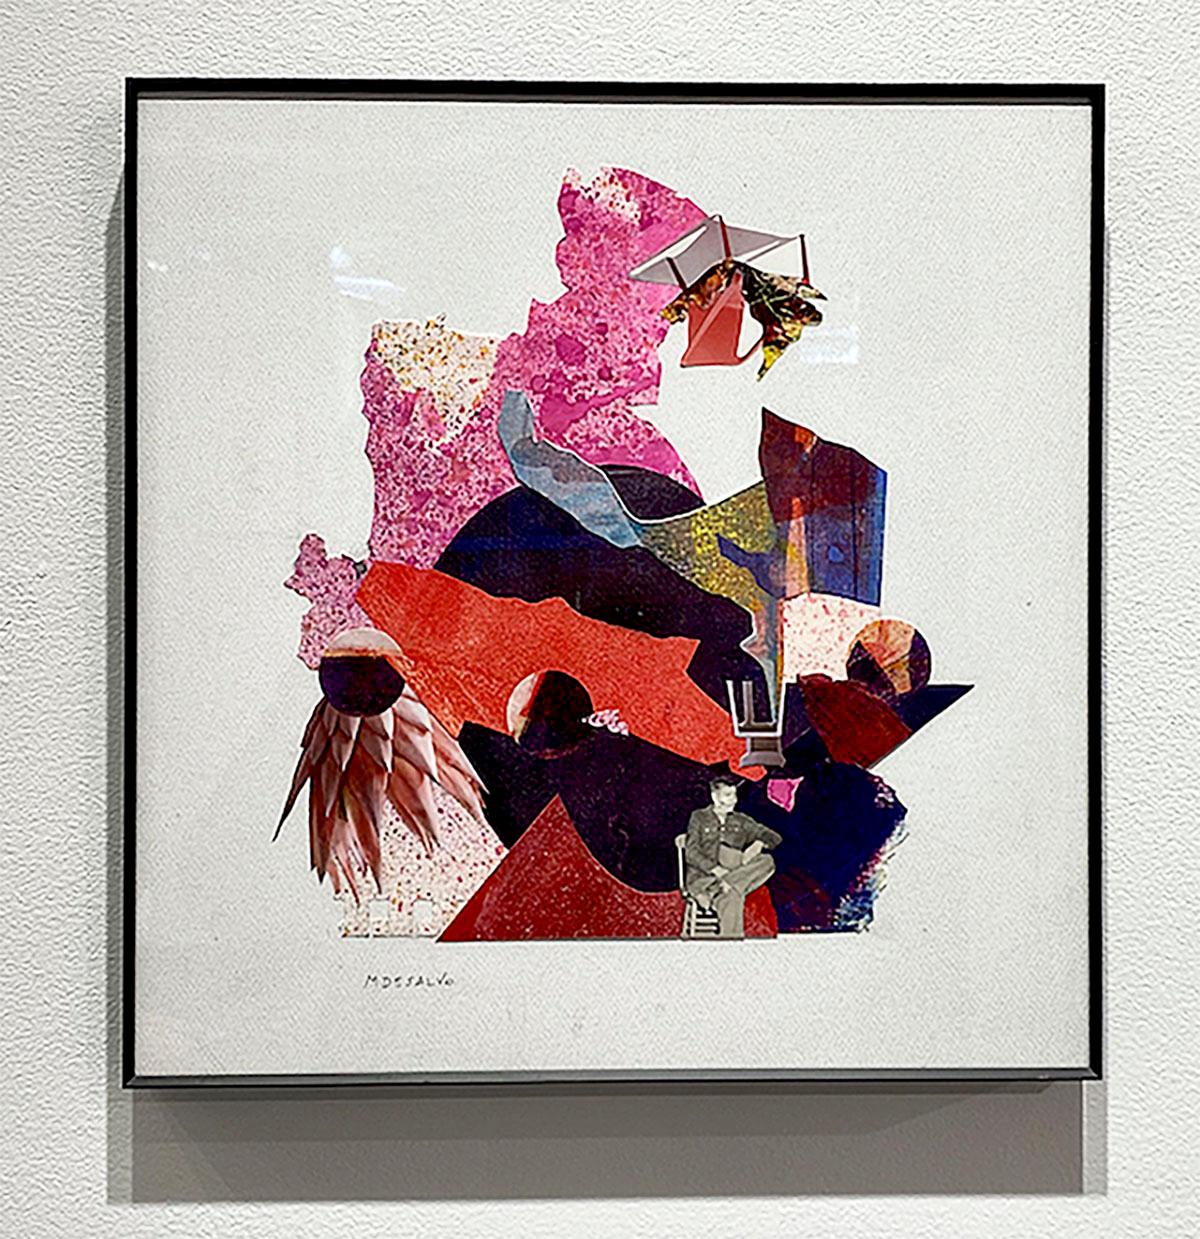 « Acceleration », abstrait, rose, rouge, violet, botanique, texture, audacieux, collage - Contemporain Mixed Media Art par Monica DeSalvo